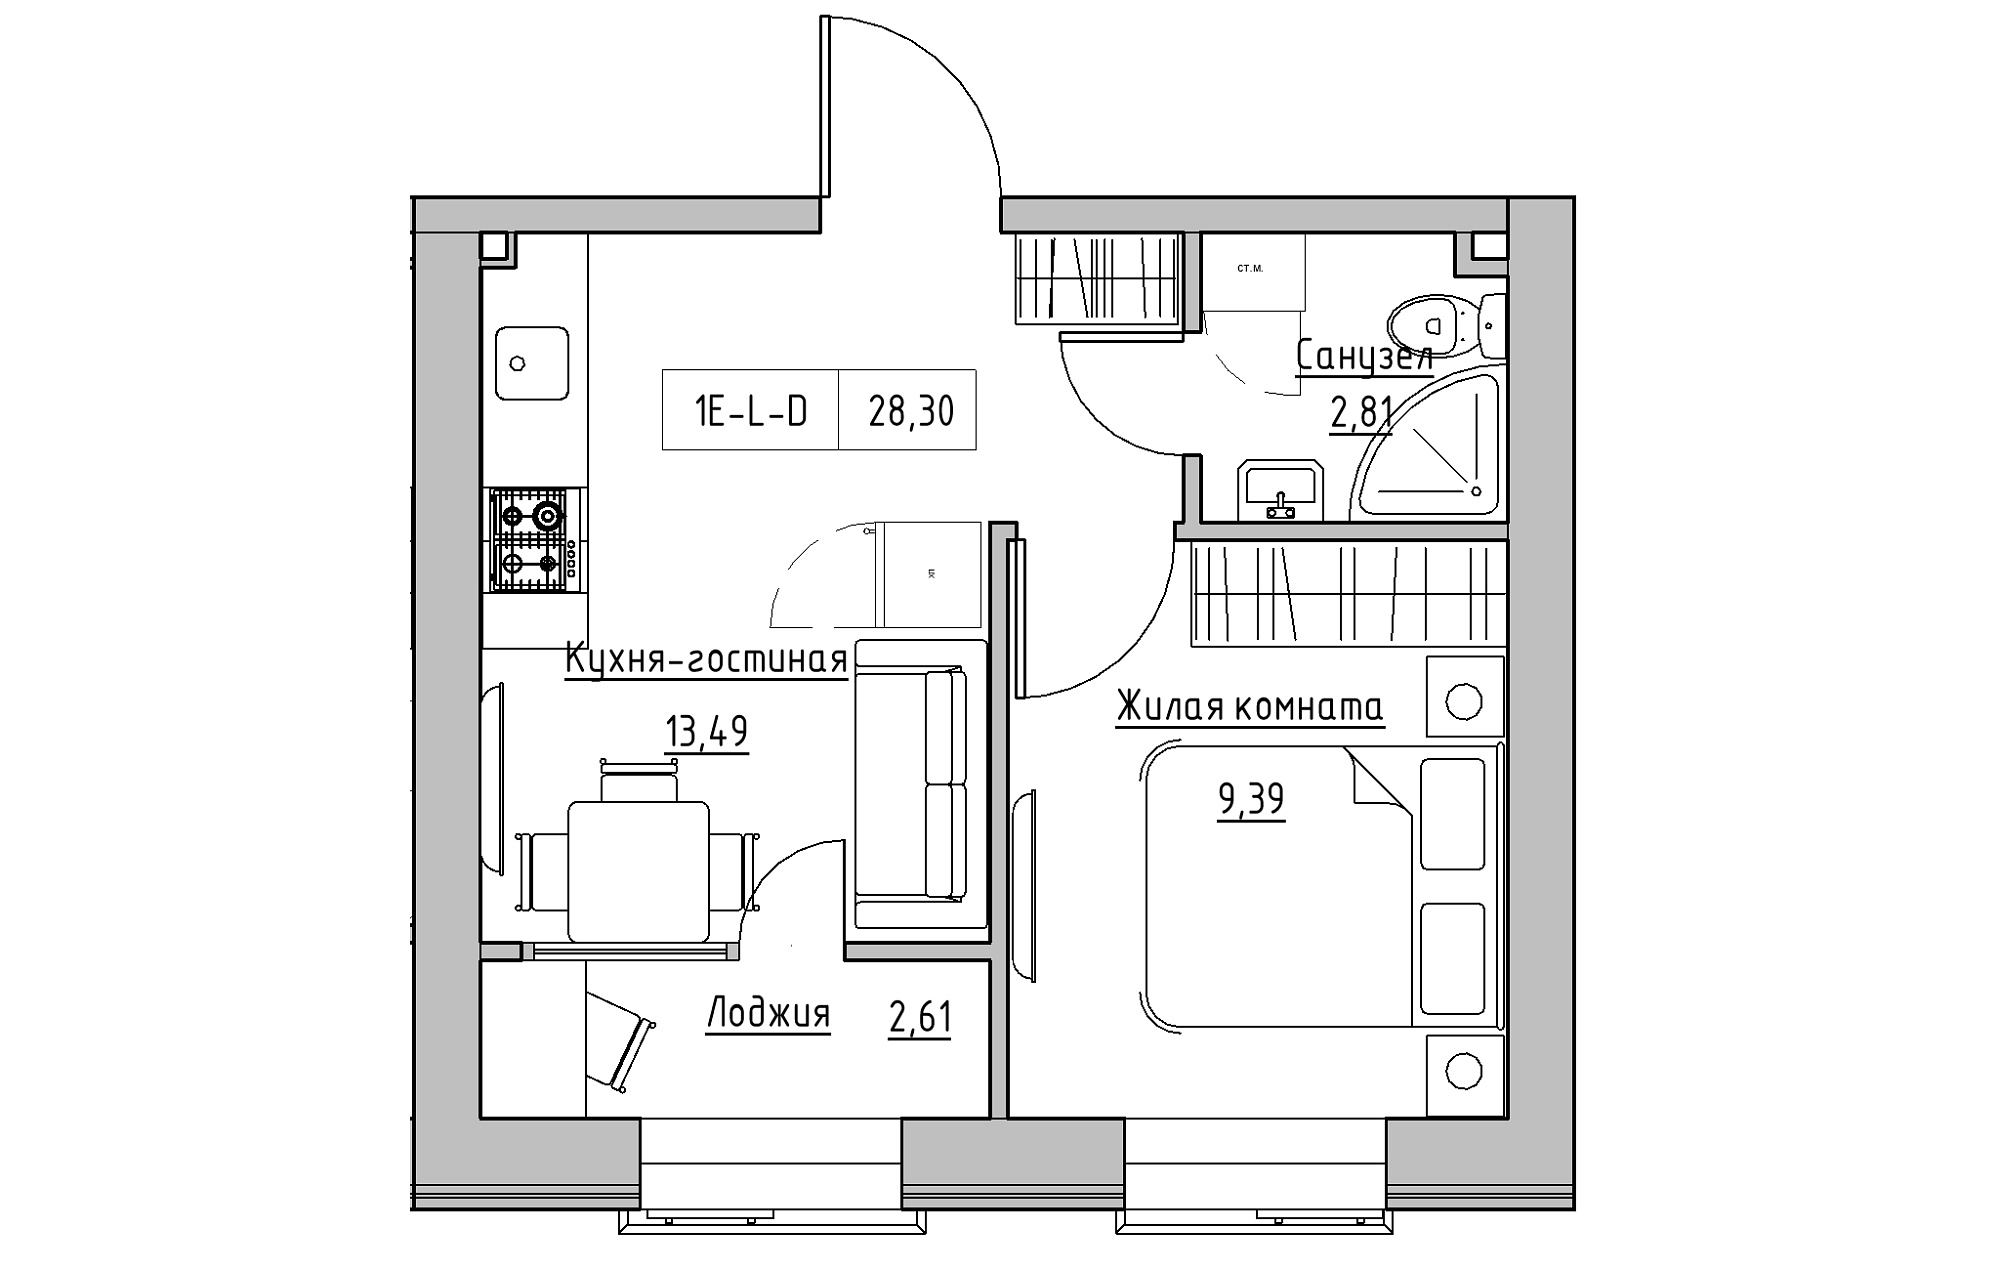 Планування 1-к квартира площею 28.3м2, KS-018-03/0001.